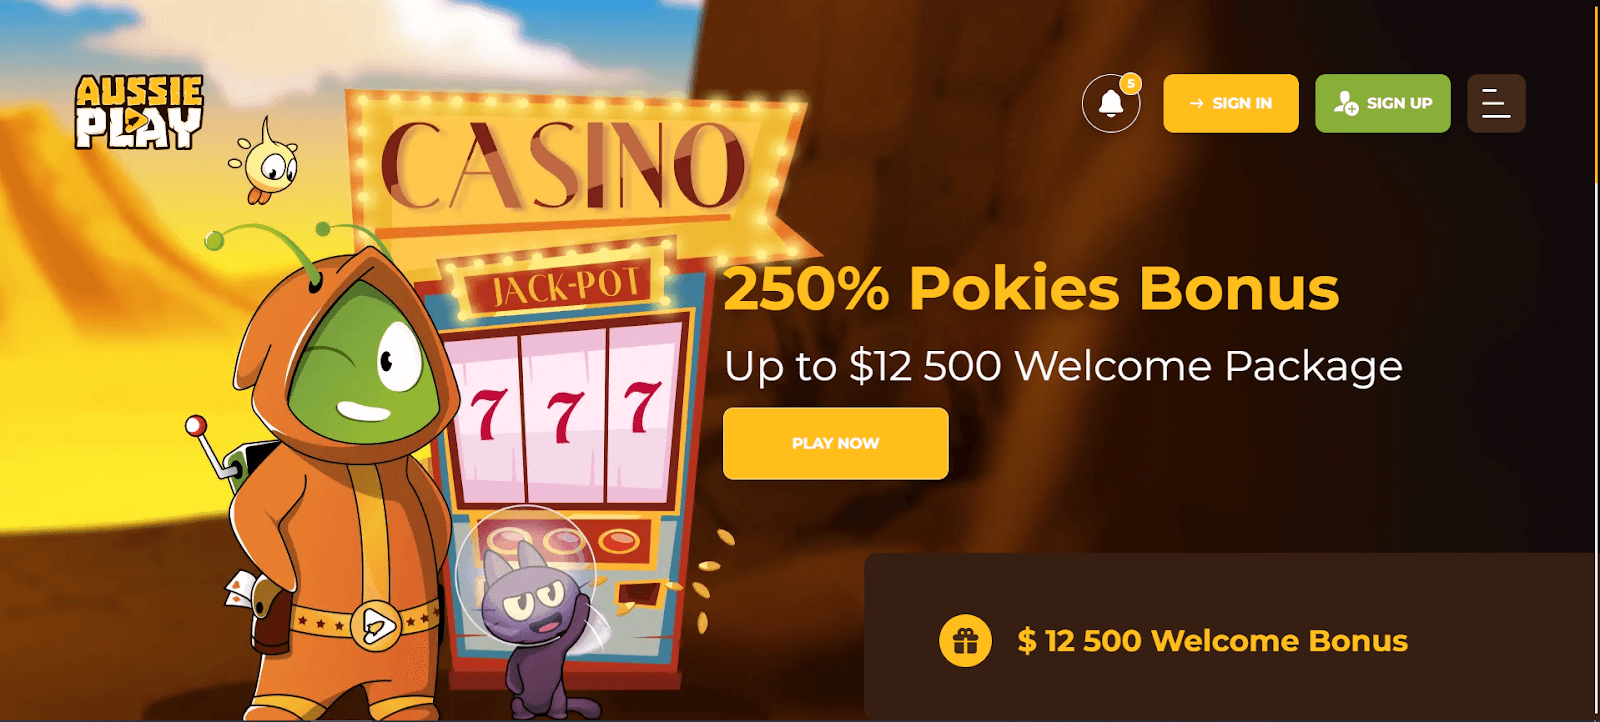 Aussie Play Casino Interface